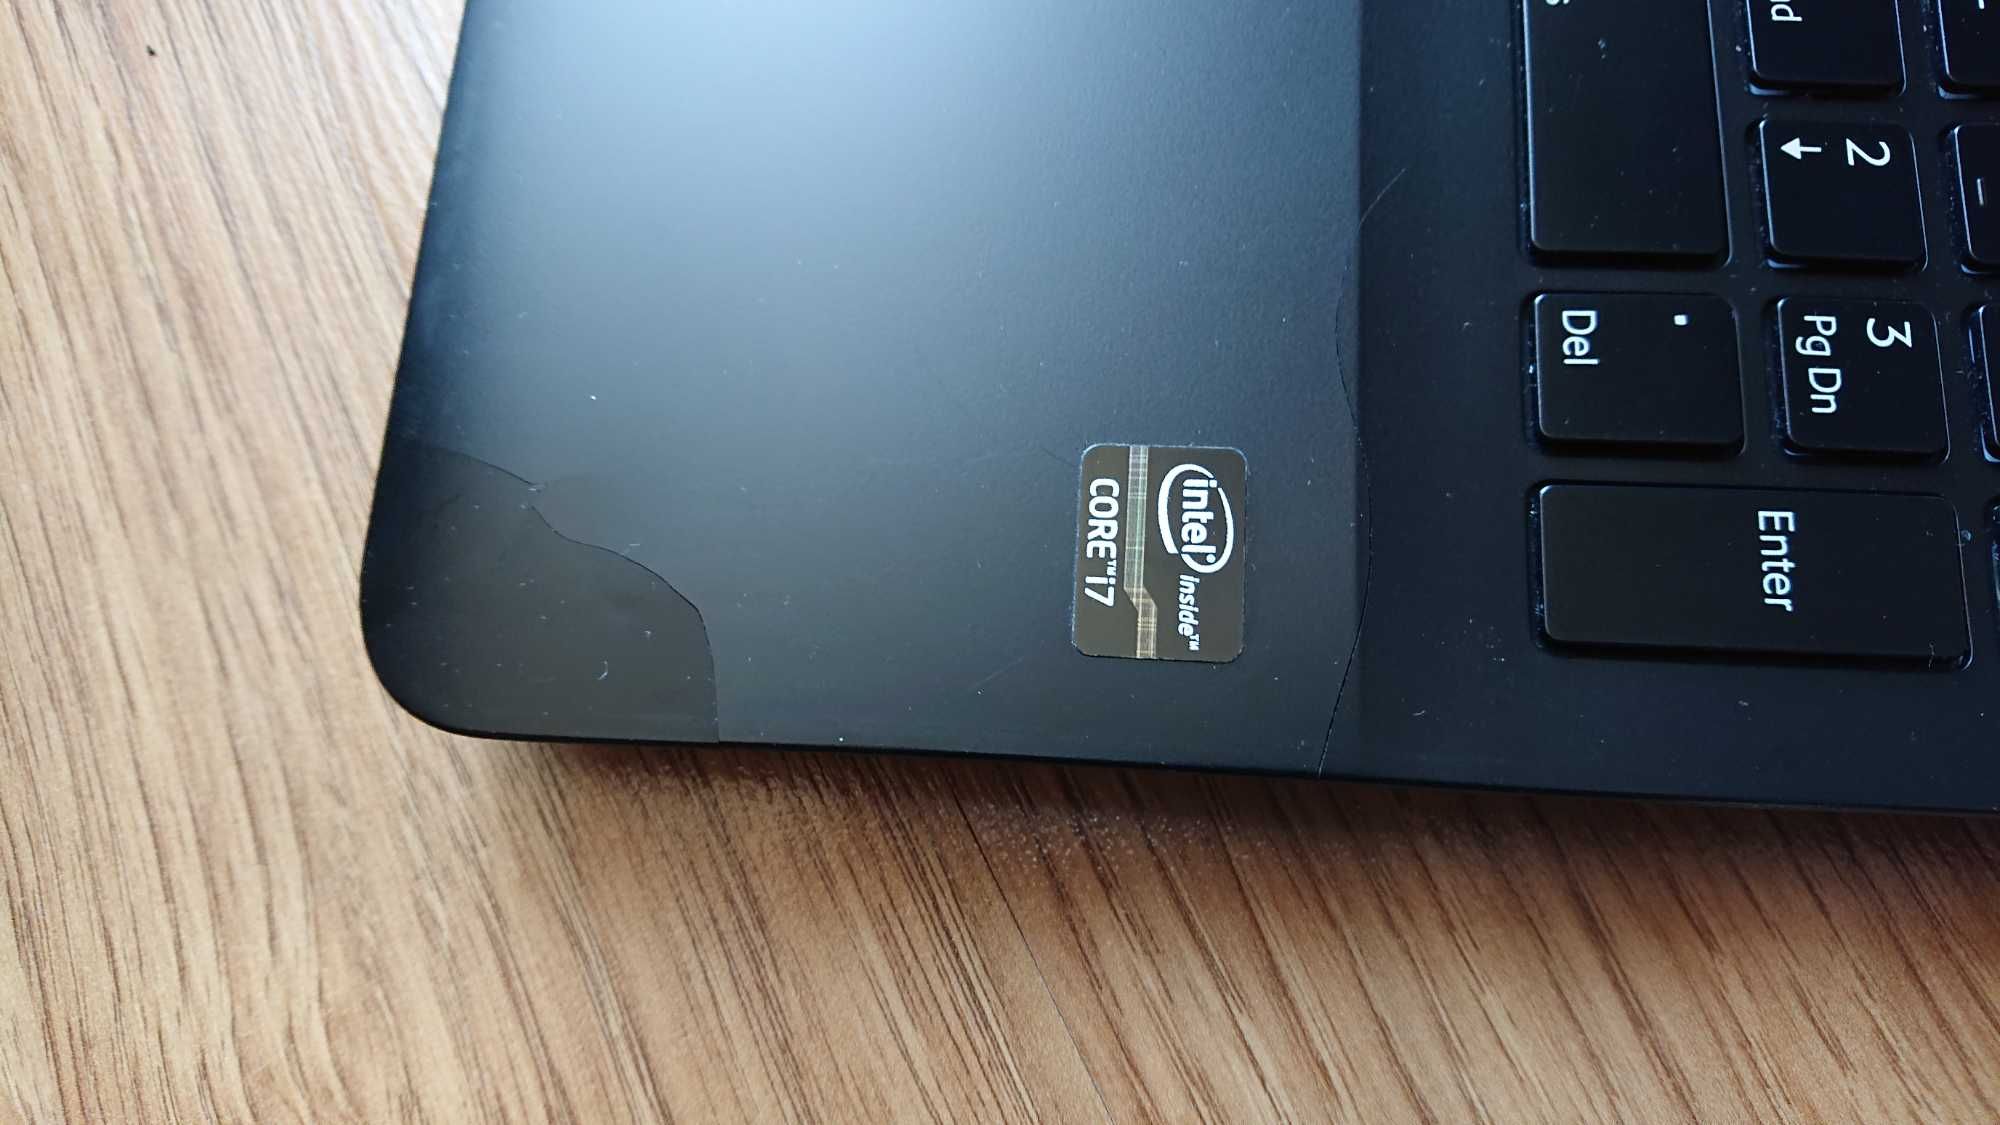 Laptop sony vaio svf15 i7 GT740m dotyk i podświetlana klawiatura